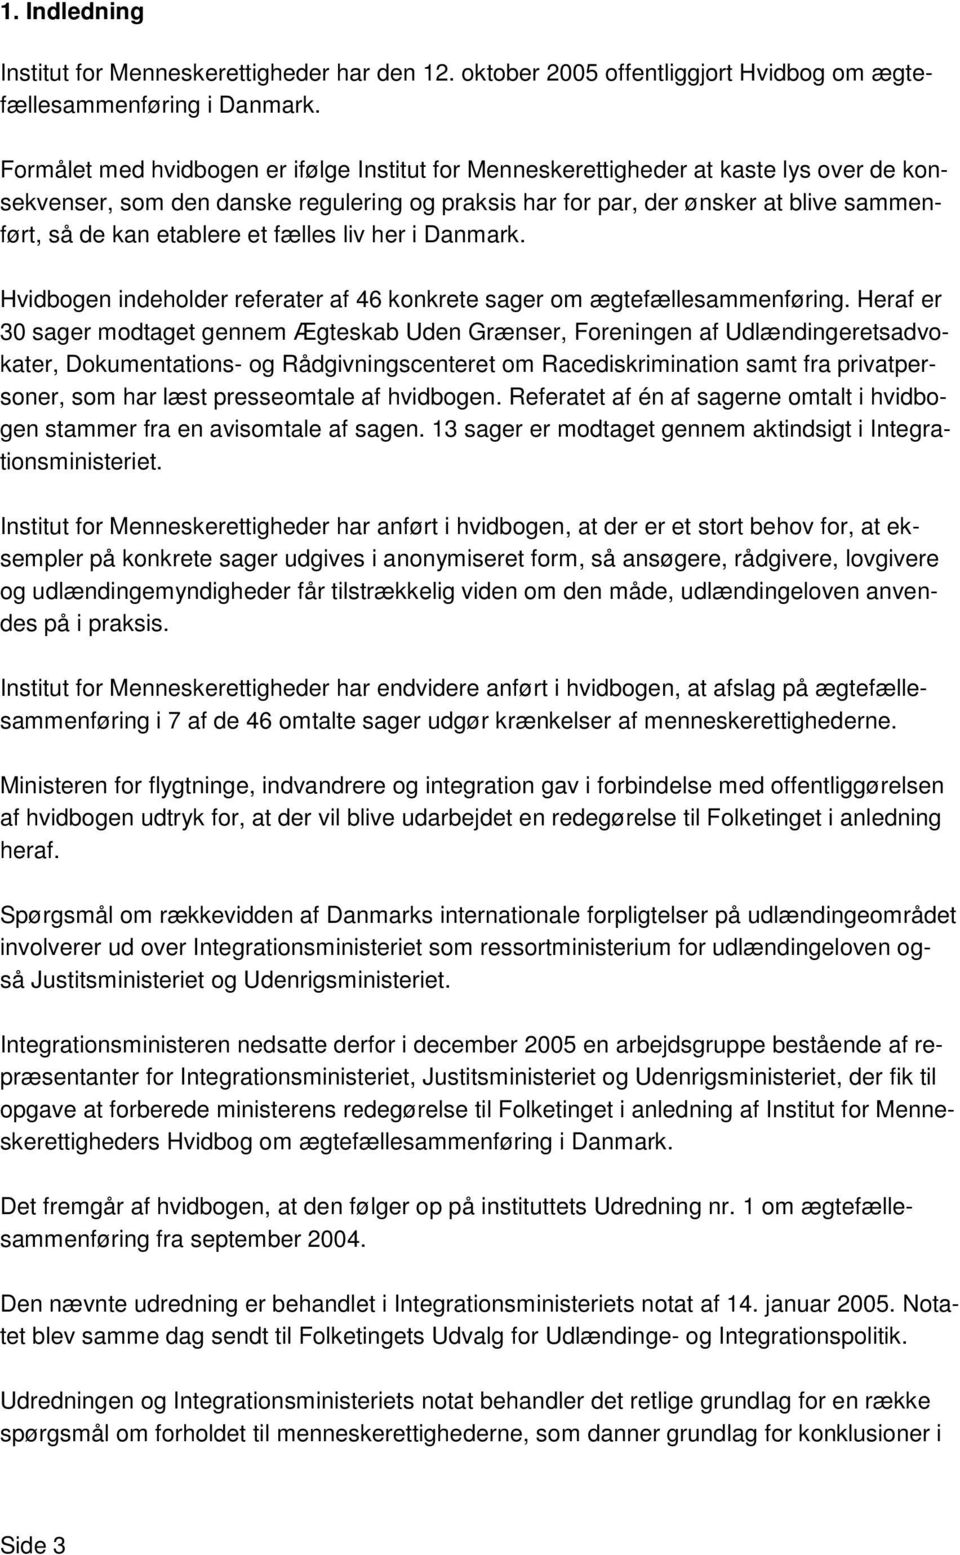 etablere et fælles liv her i Danmark. Hvidbogen indeholder referater af 46 konkrete sager om ægtefællesammenføring.